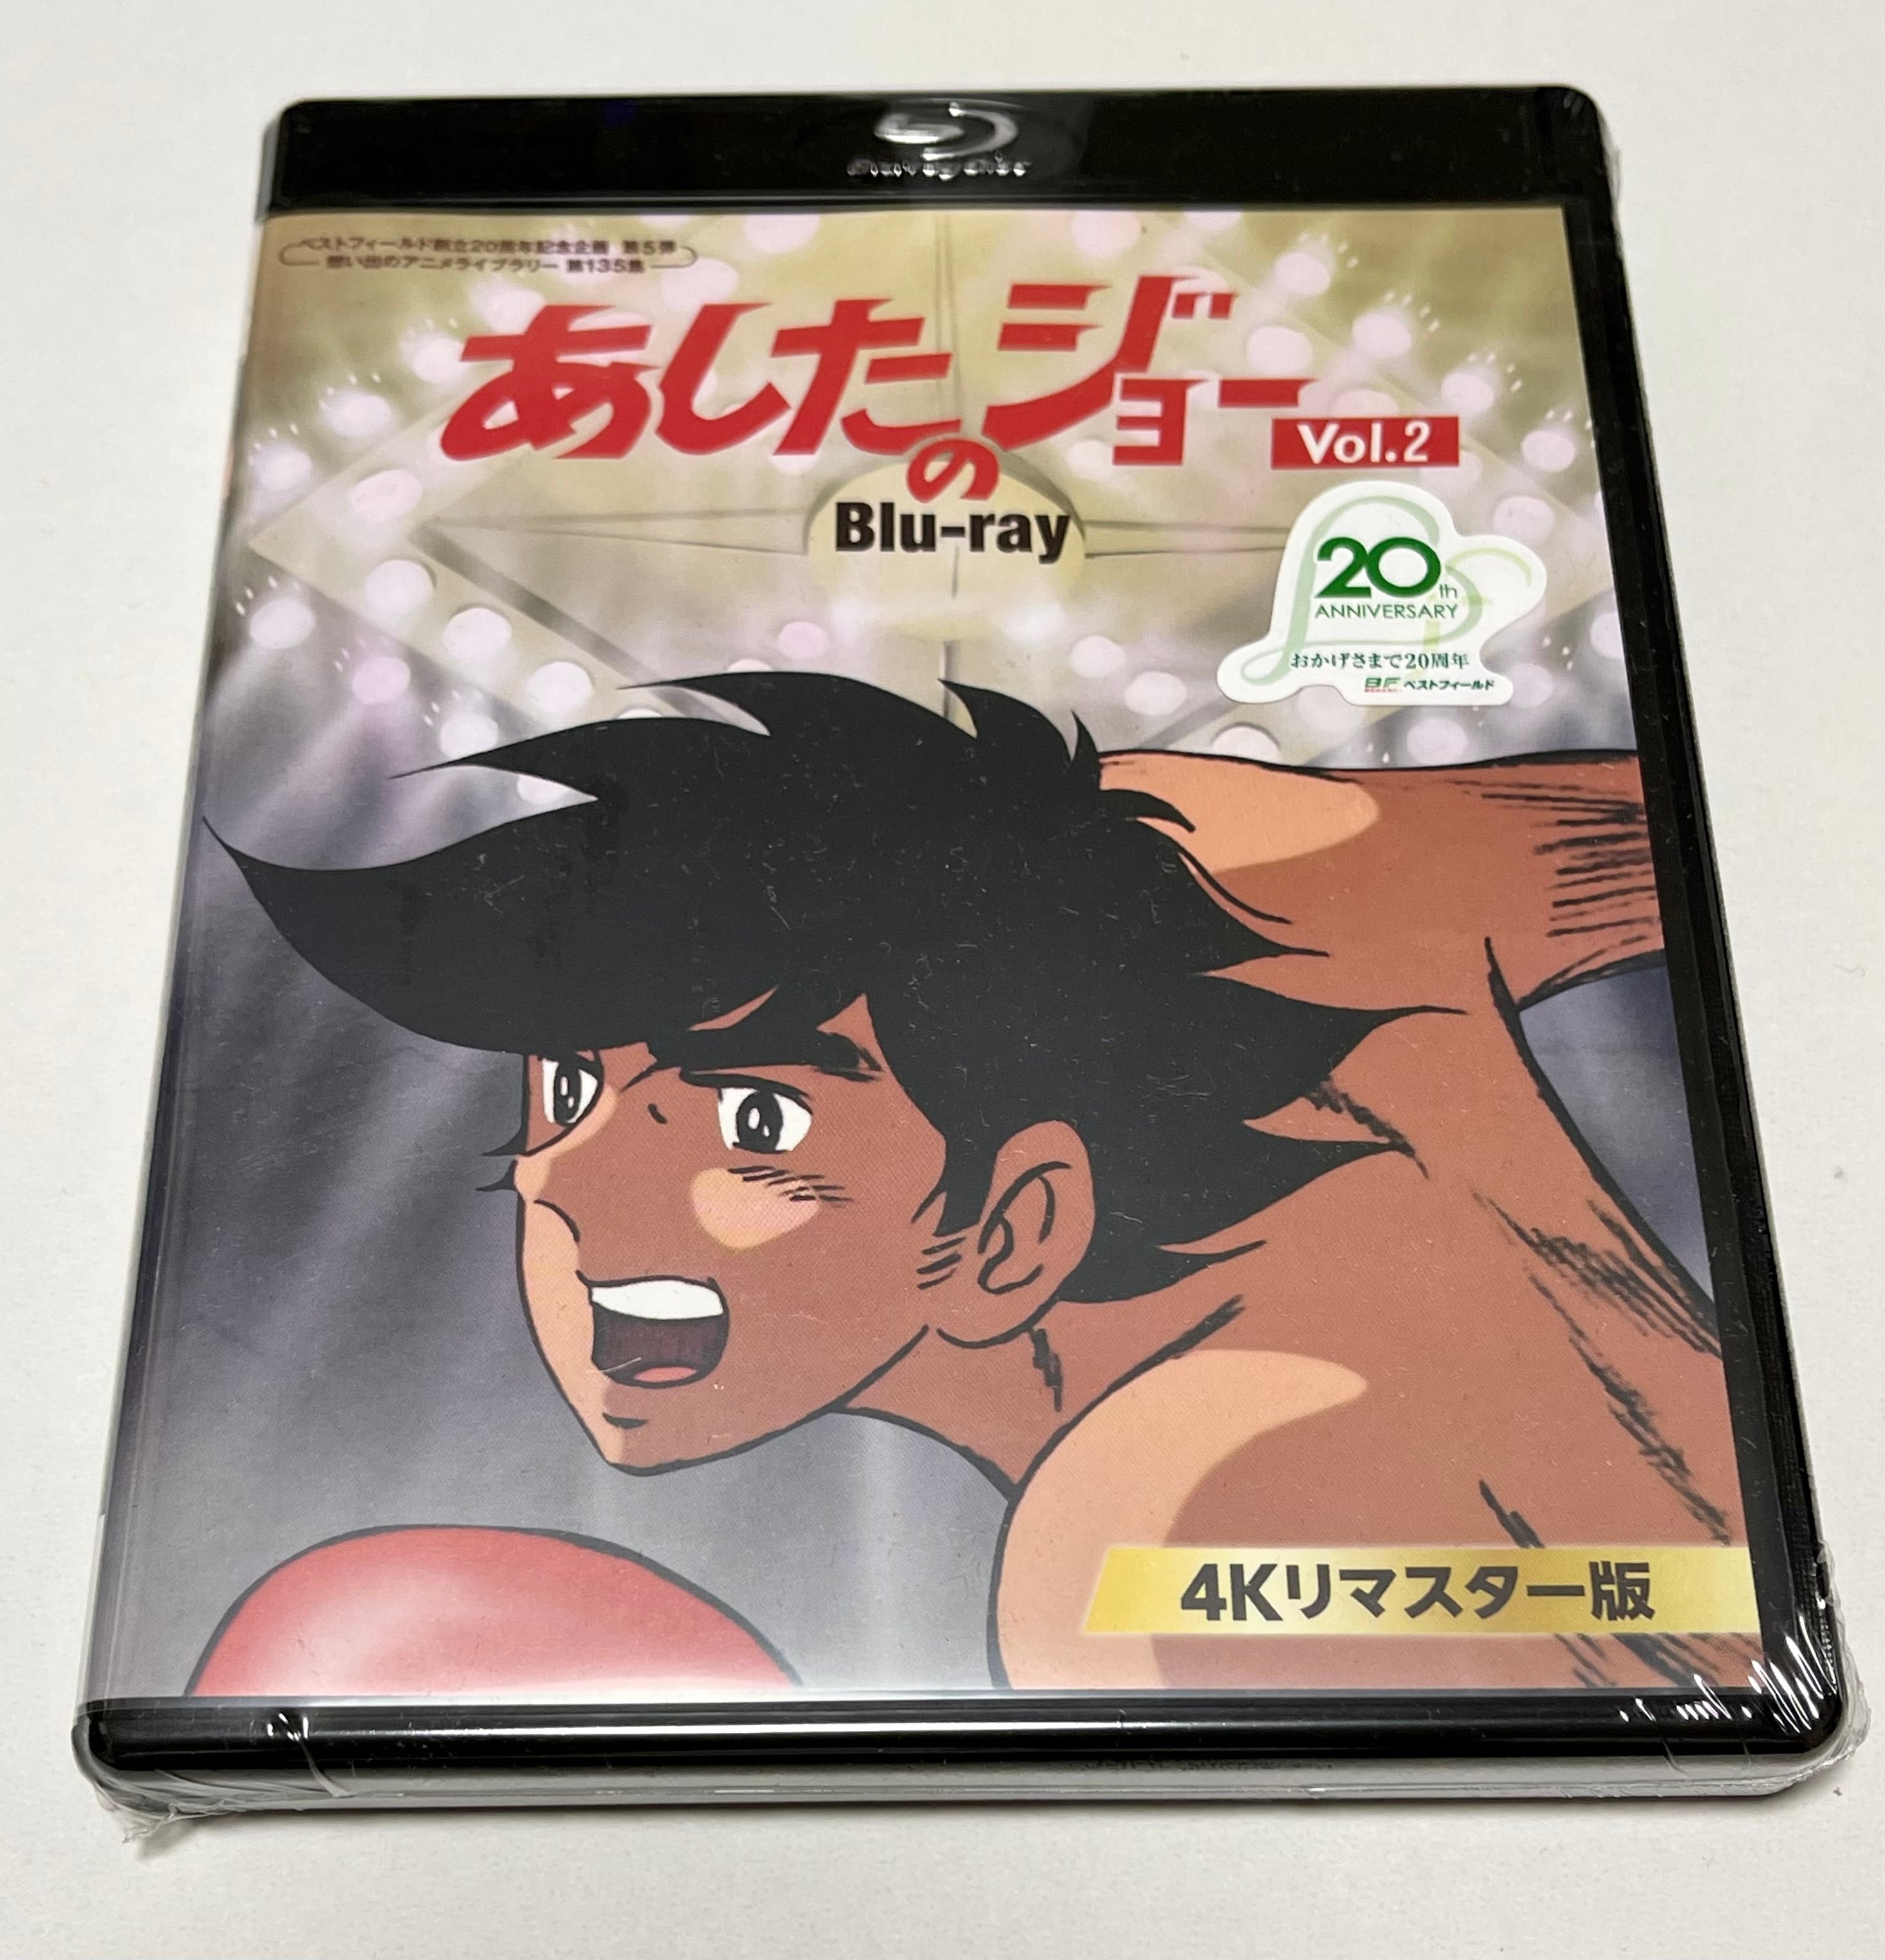 ダッシュ勝平 Blu-ray Vol.2 | susunshop